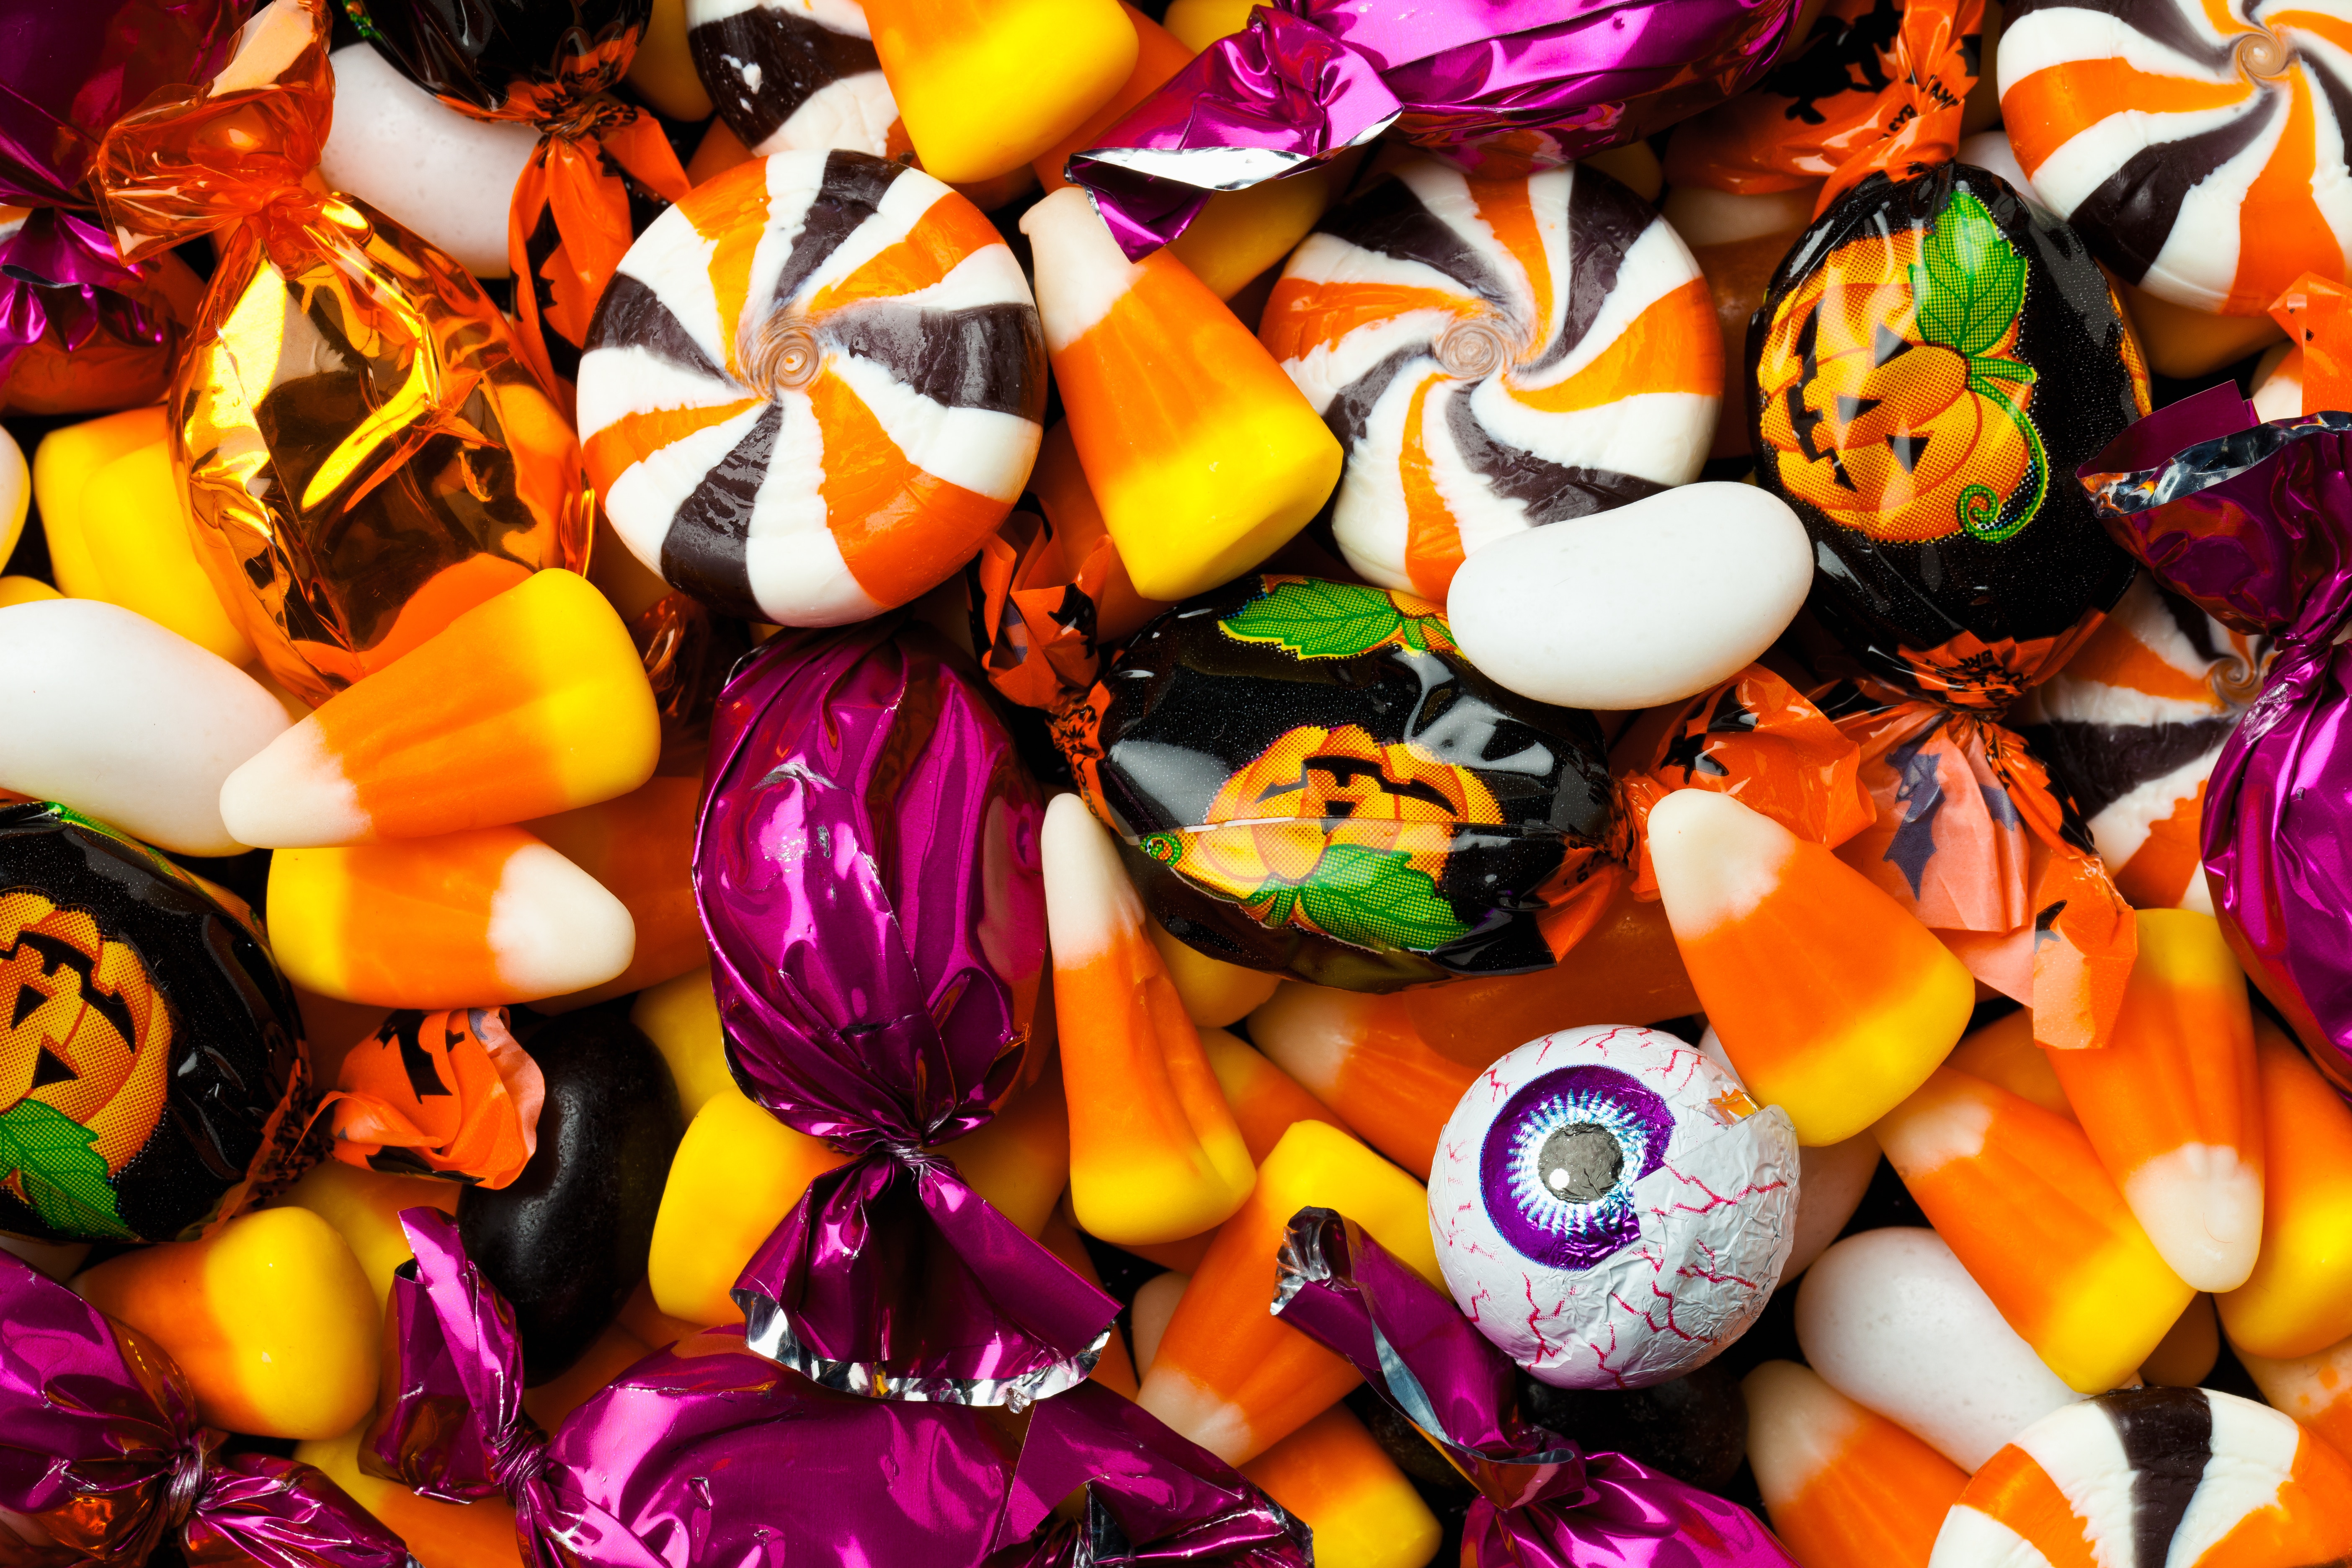 Sweets vip. Конфеты конфеты "Candy time". Конфеты для Хэллоуина. Конфеты разноцветные. Хэллоуинские сладости конфеты.